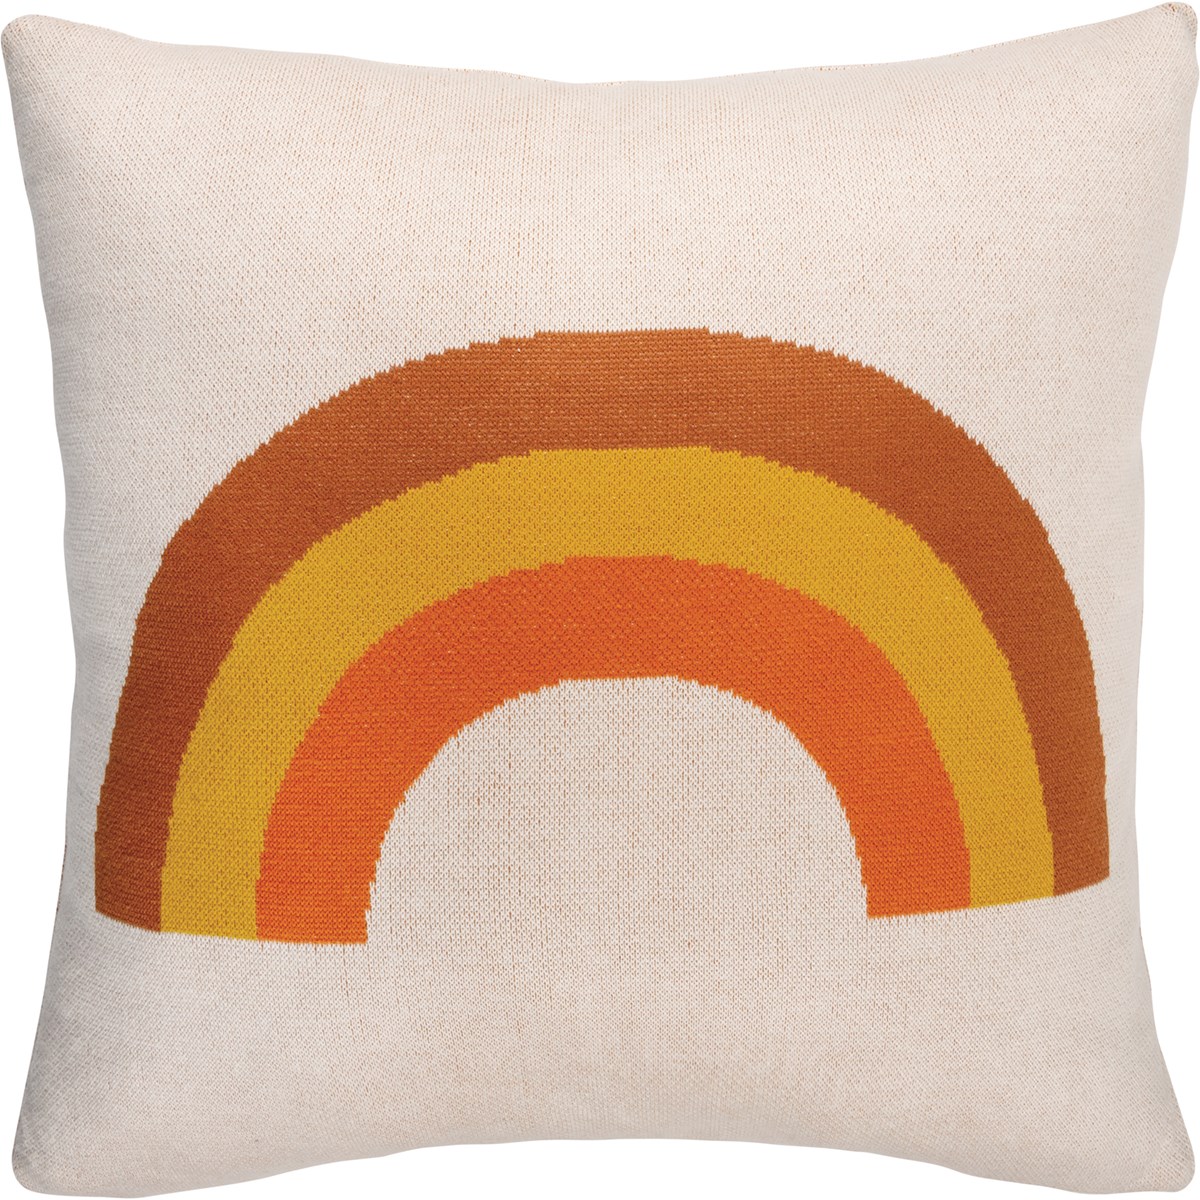 Tricolor Rainbow Pillow - Cotton, Zipper